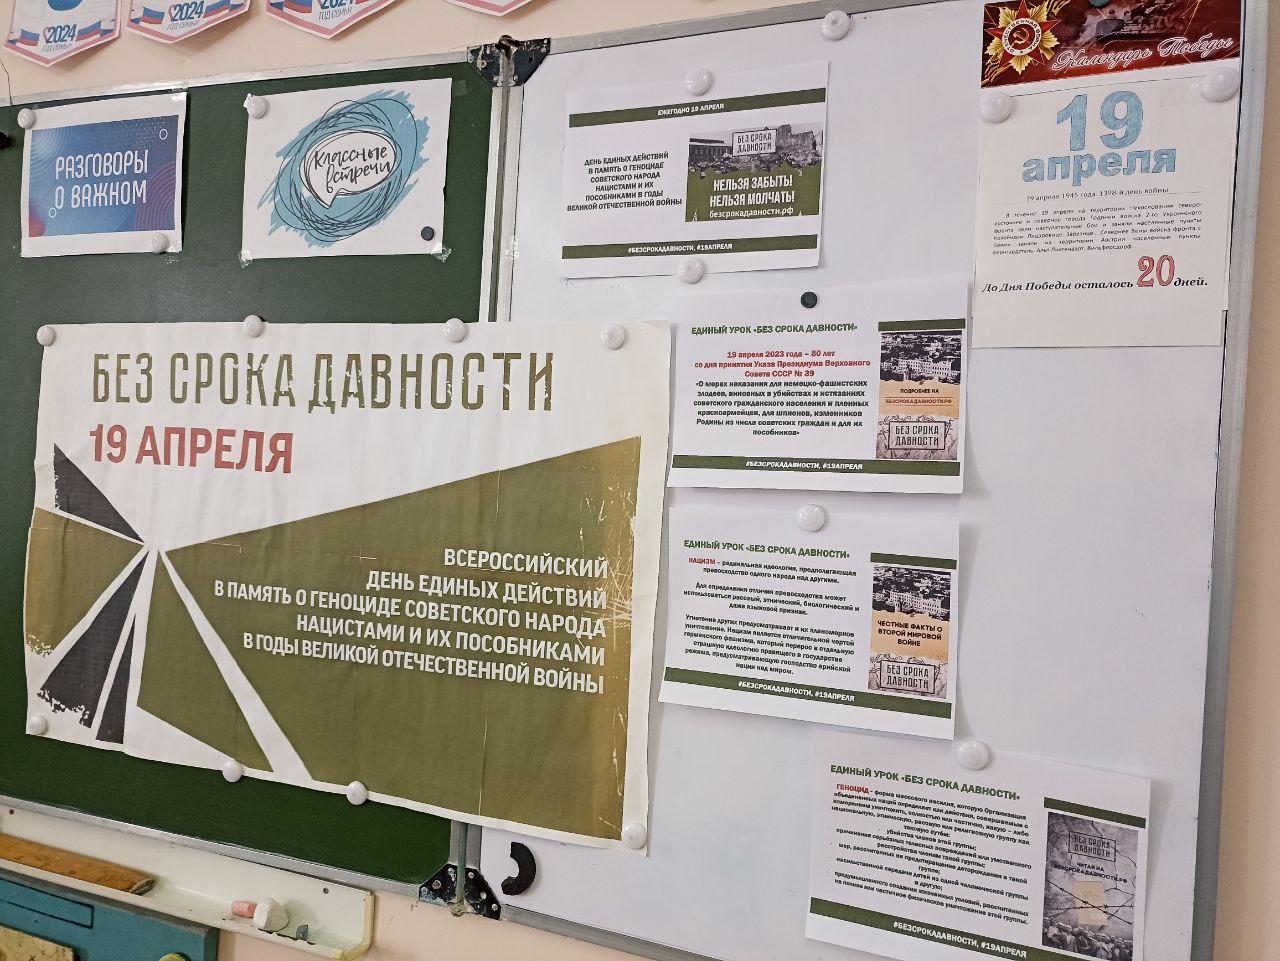 Мероприятия в рамках Всероссийского Дня Единого Действия прошли в школе.